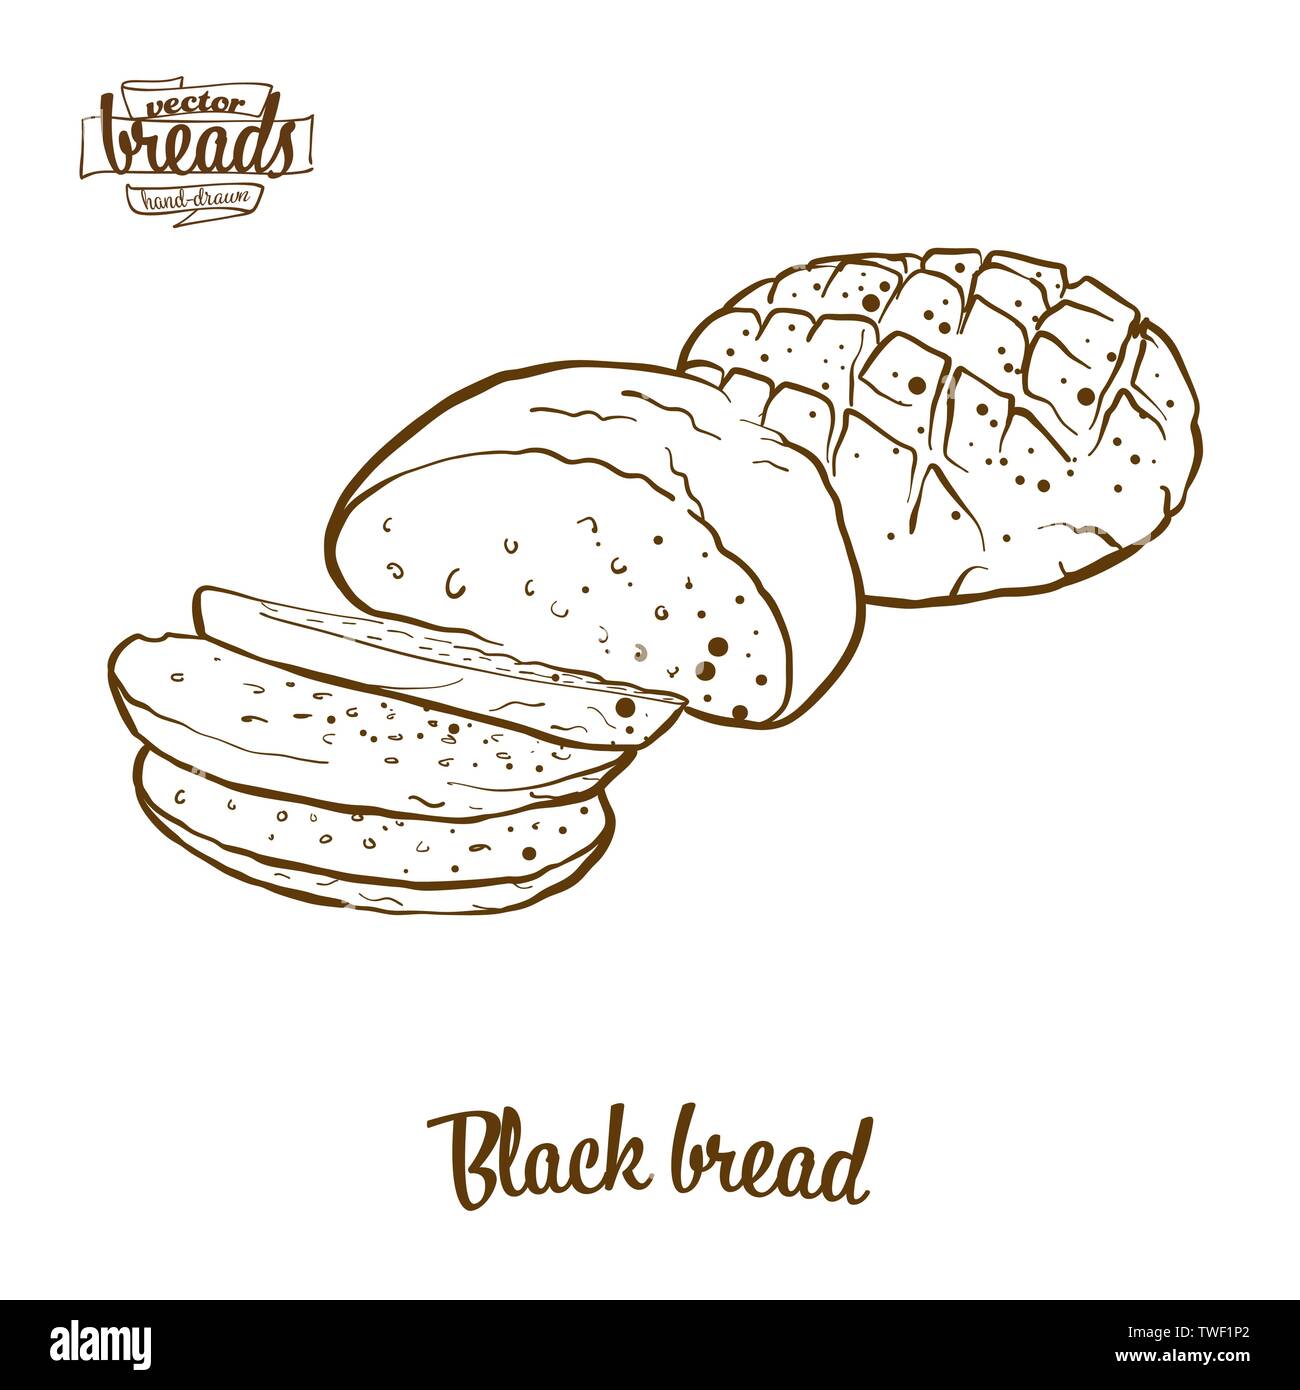 Schwarze Brot Brot vektor Zeichnung. Essen Skizze von Roggen Brot, in der Regel in Europa bekannt. Bäckerei Abbildung Serie. Stock Vektor